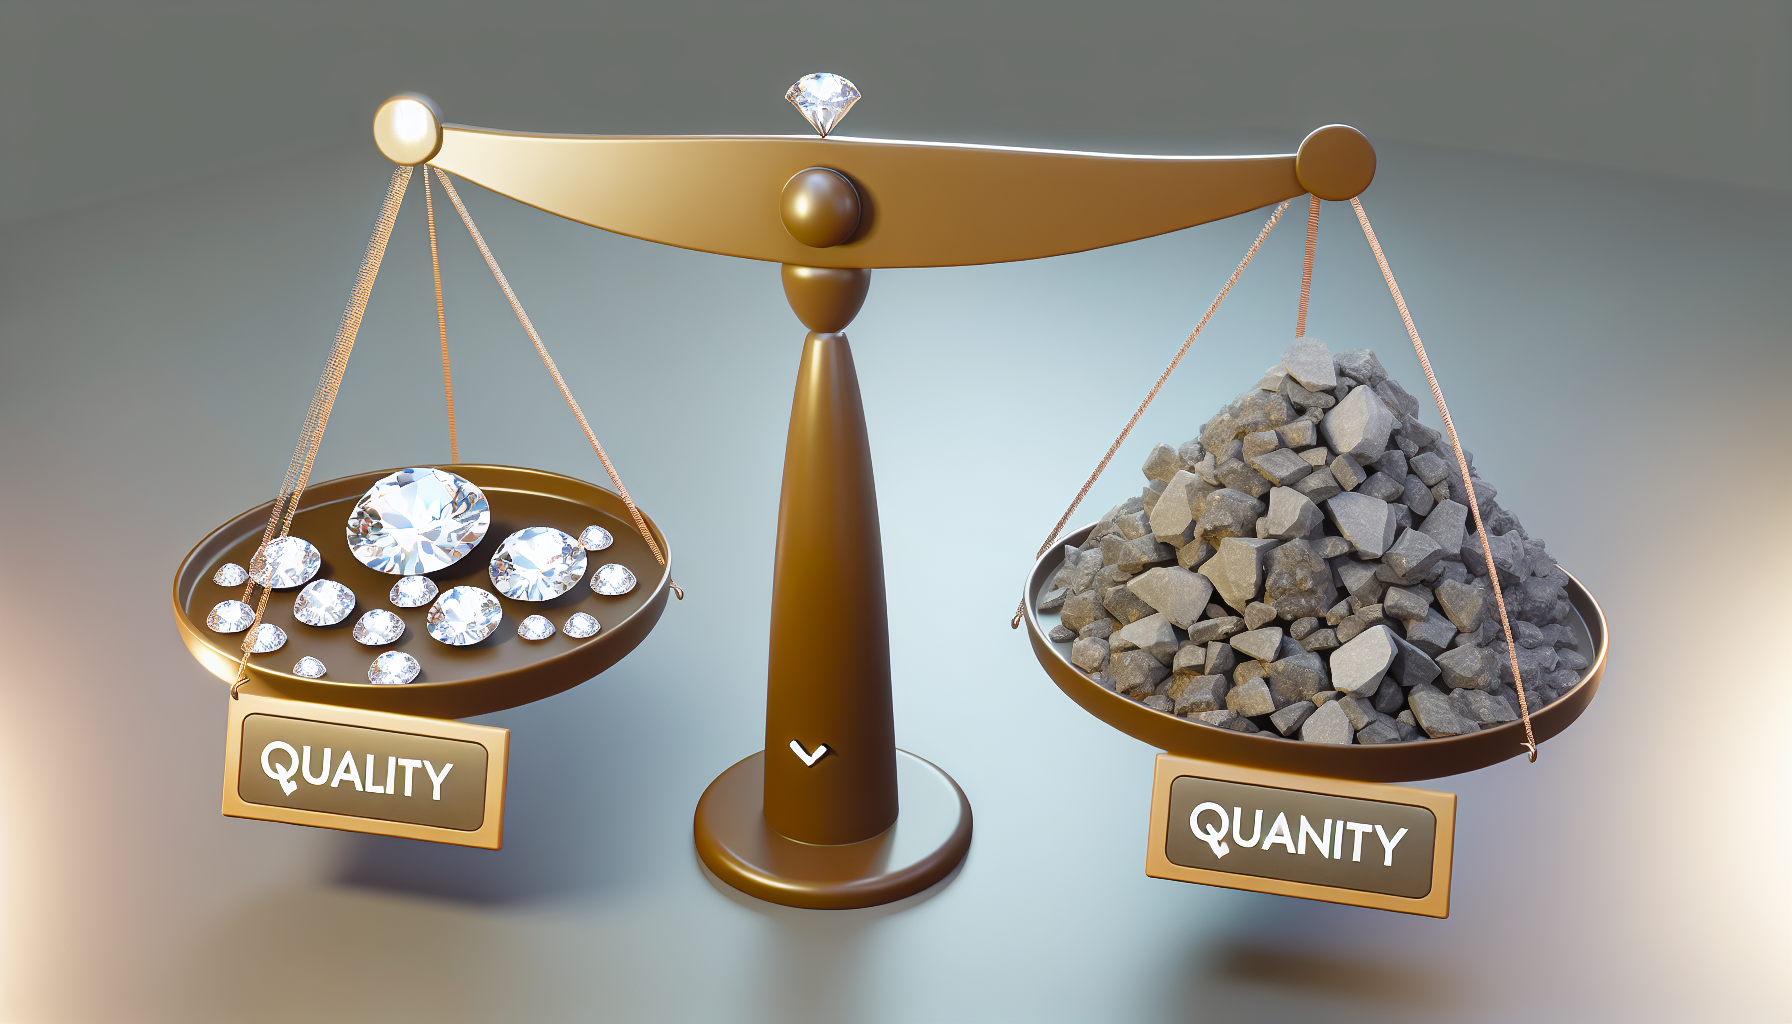 A visual representation of data quality versus quantity